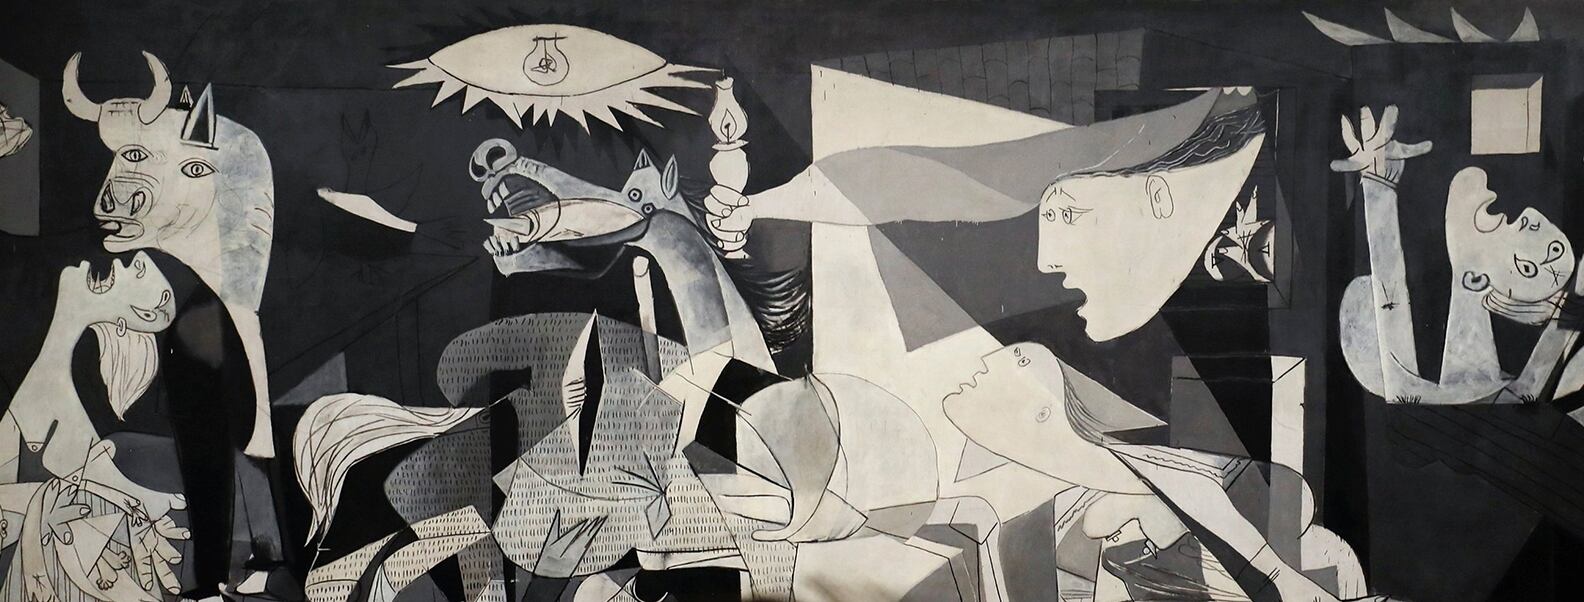 FORMATO HISTORIA Una imágen del Guernica, obra emblemática de Pablo Picasso, un artista que, como Paul Gauguin, ha sido acusado por el feminismo radical de ejercer malos tratos hacia las mujeres